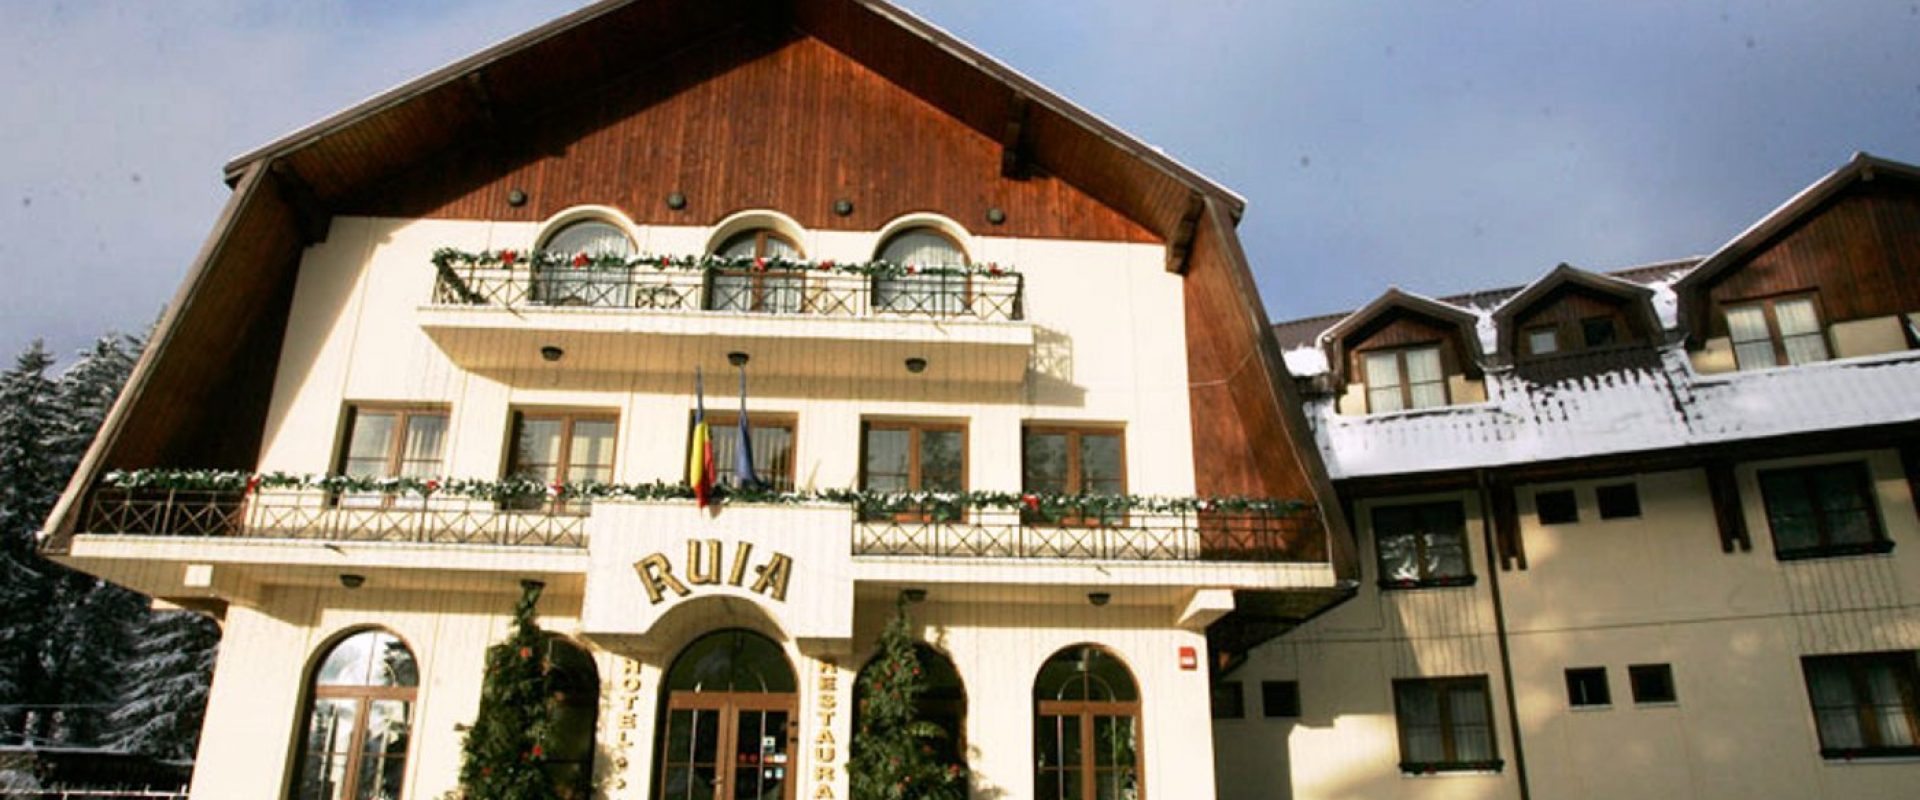 Odihnă la munte, România, Poiana Brașov, Hotel Ruia